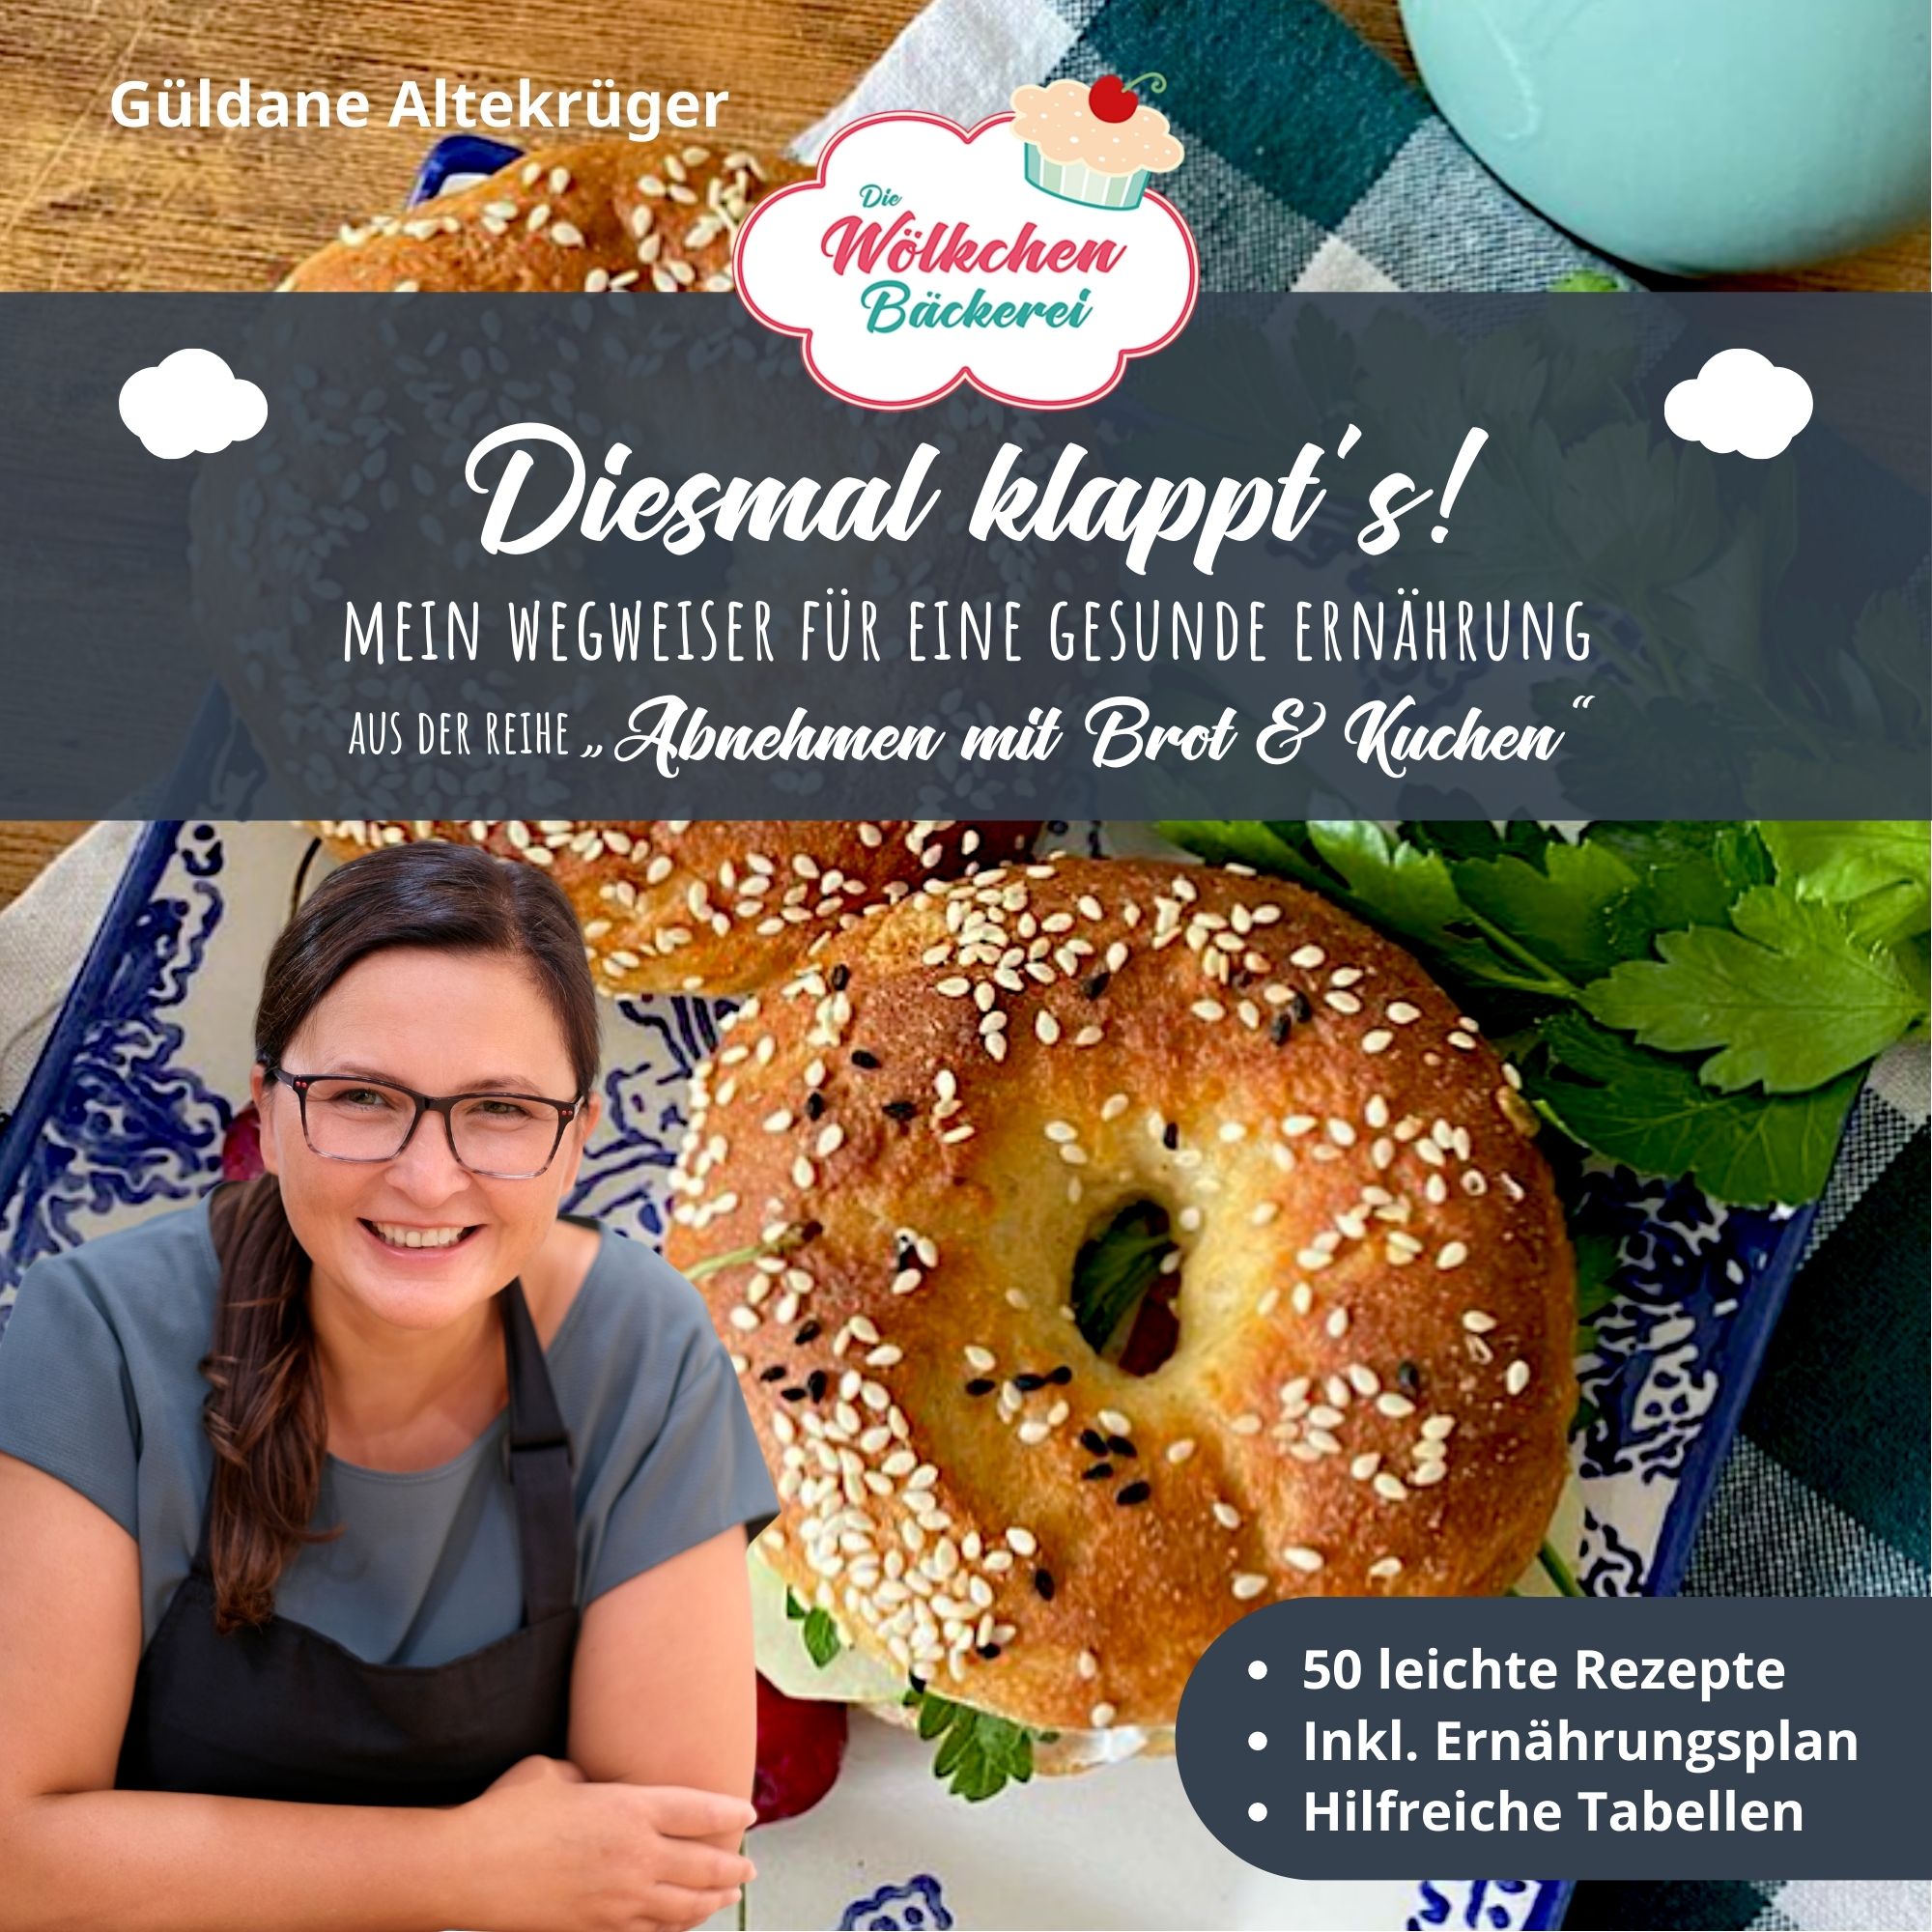 Titelbild des Artikels: Die Wölkchenbäckerei - Diesmal klappt's!